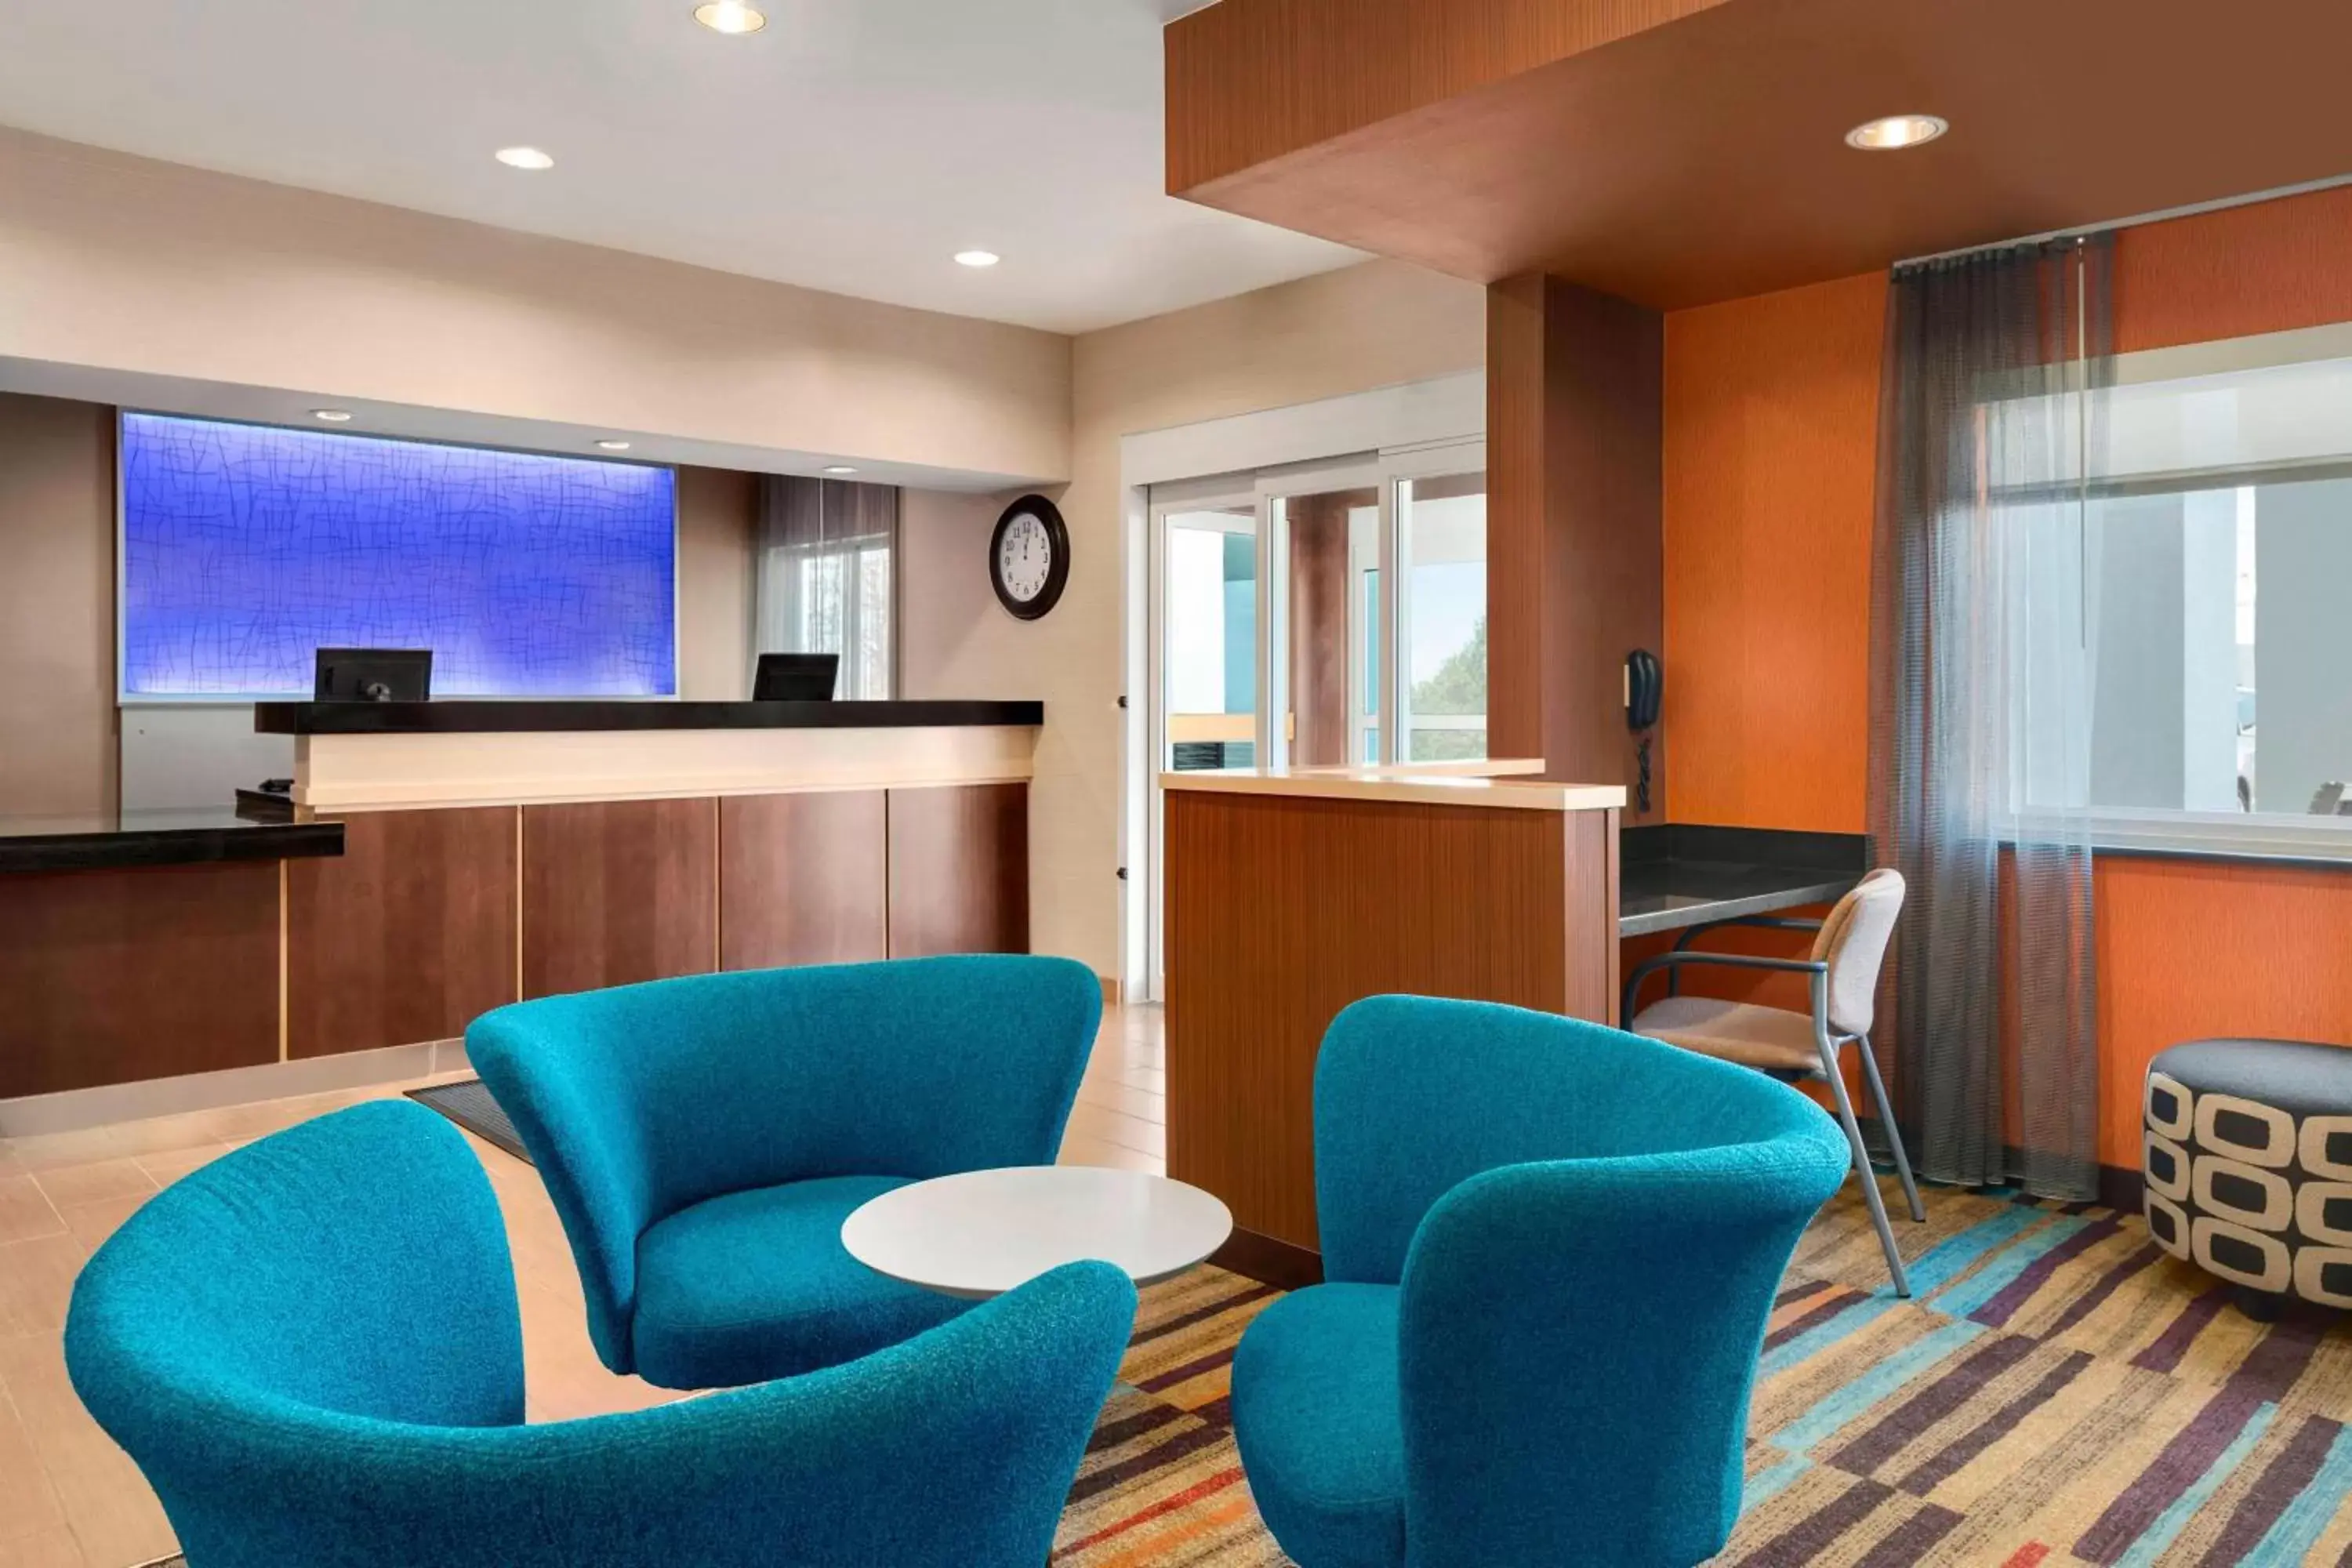 Lobby or reception in Fairfield Inn & Suites Lima